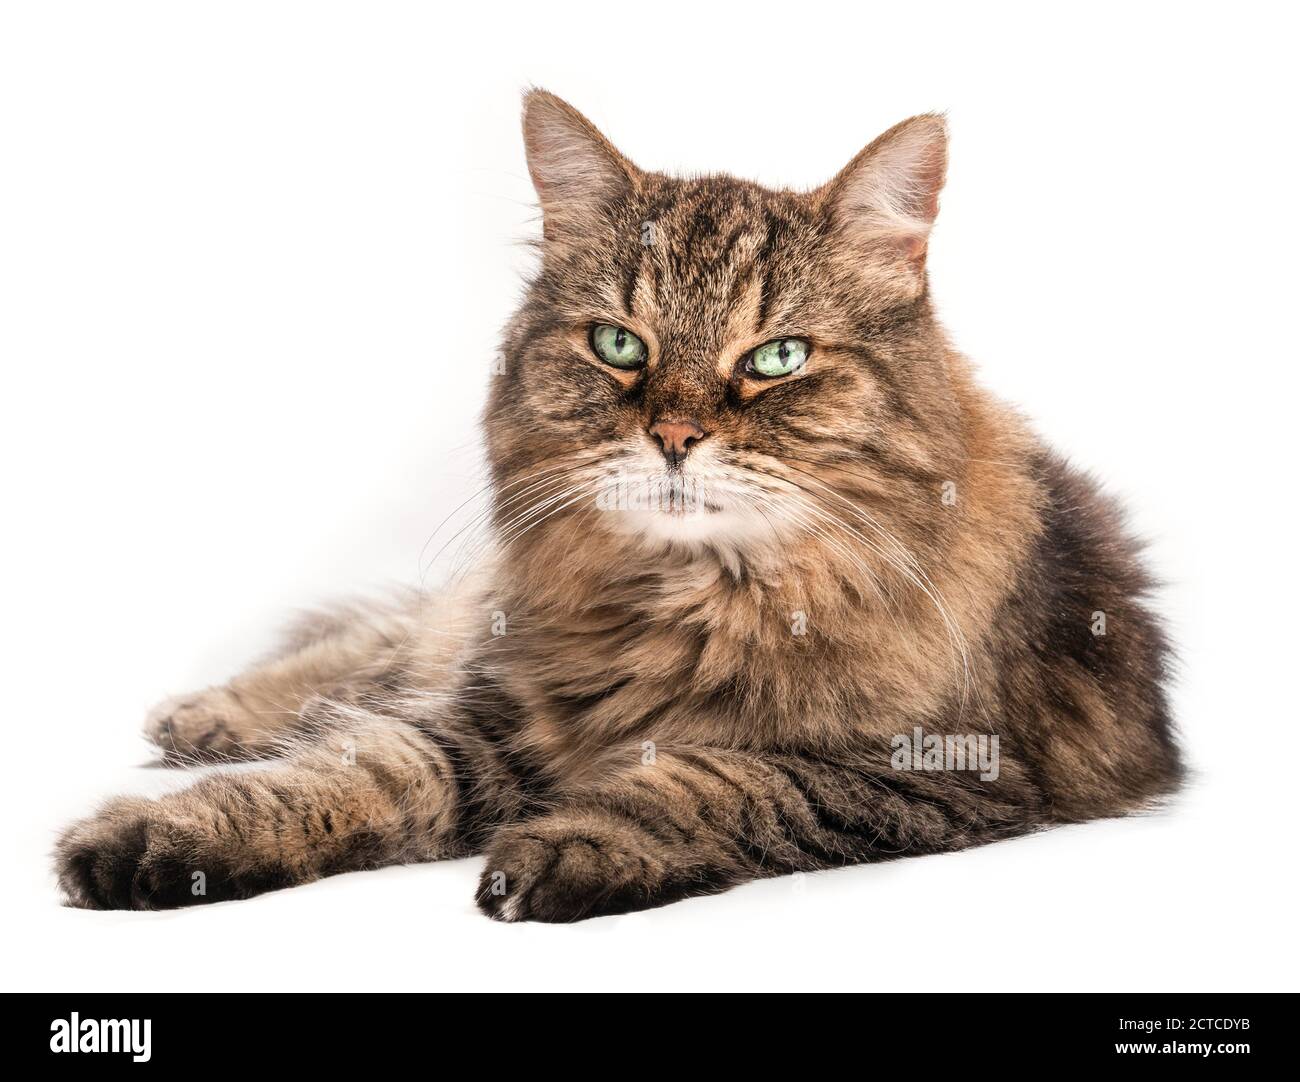 Largo pelo tabby gato con hermosos ojos verdes y largos susurros, tumbado de lado. Relajado gato mayor (14 años) mirando la cámara. Retrato de cuerpo entero. Foto de stock